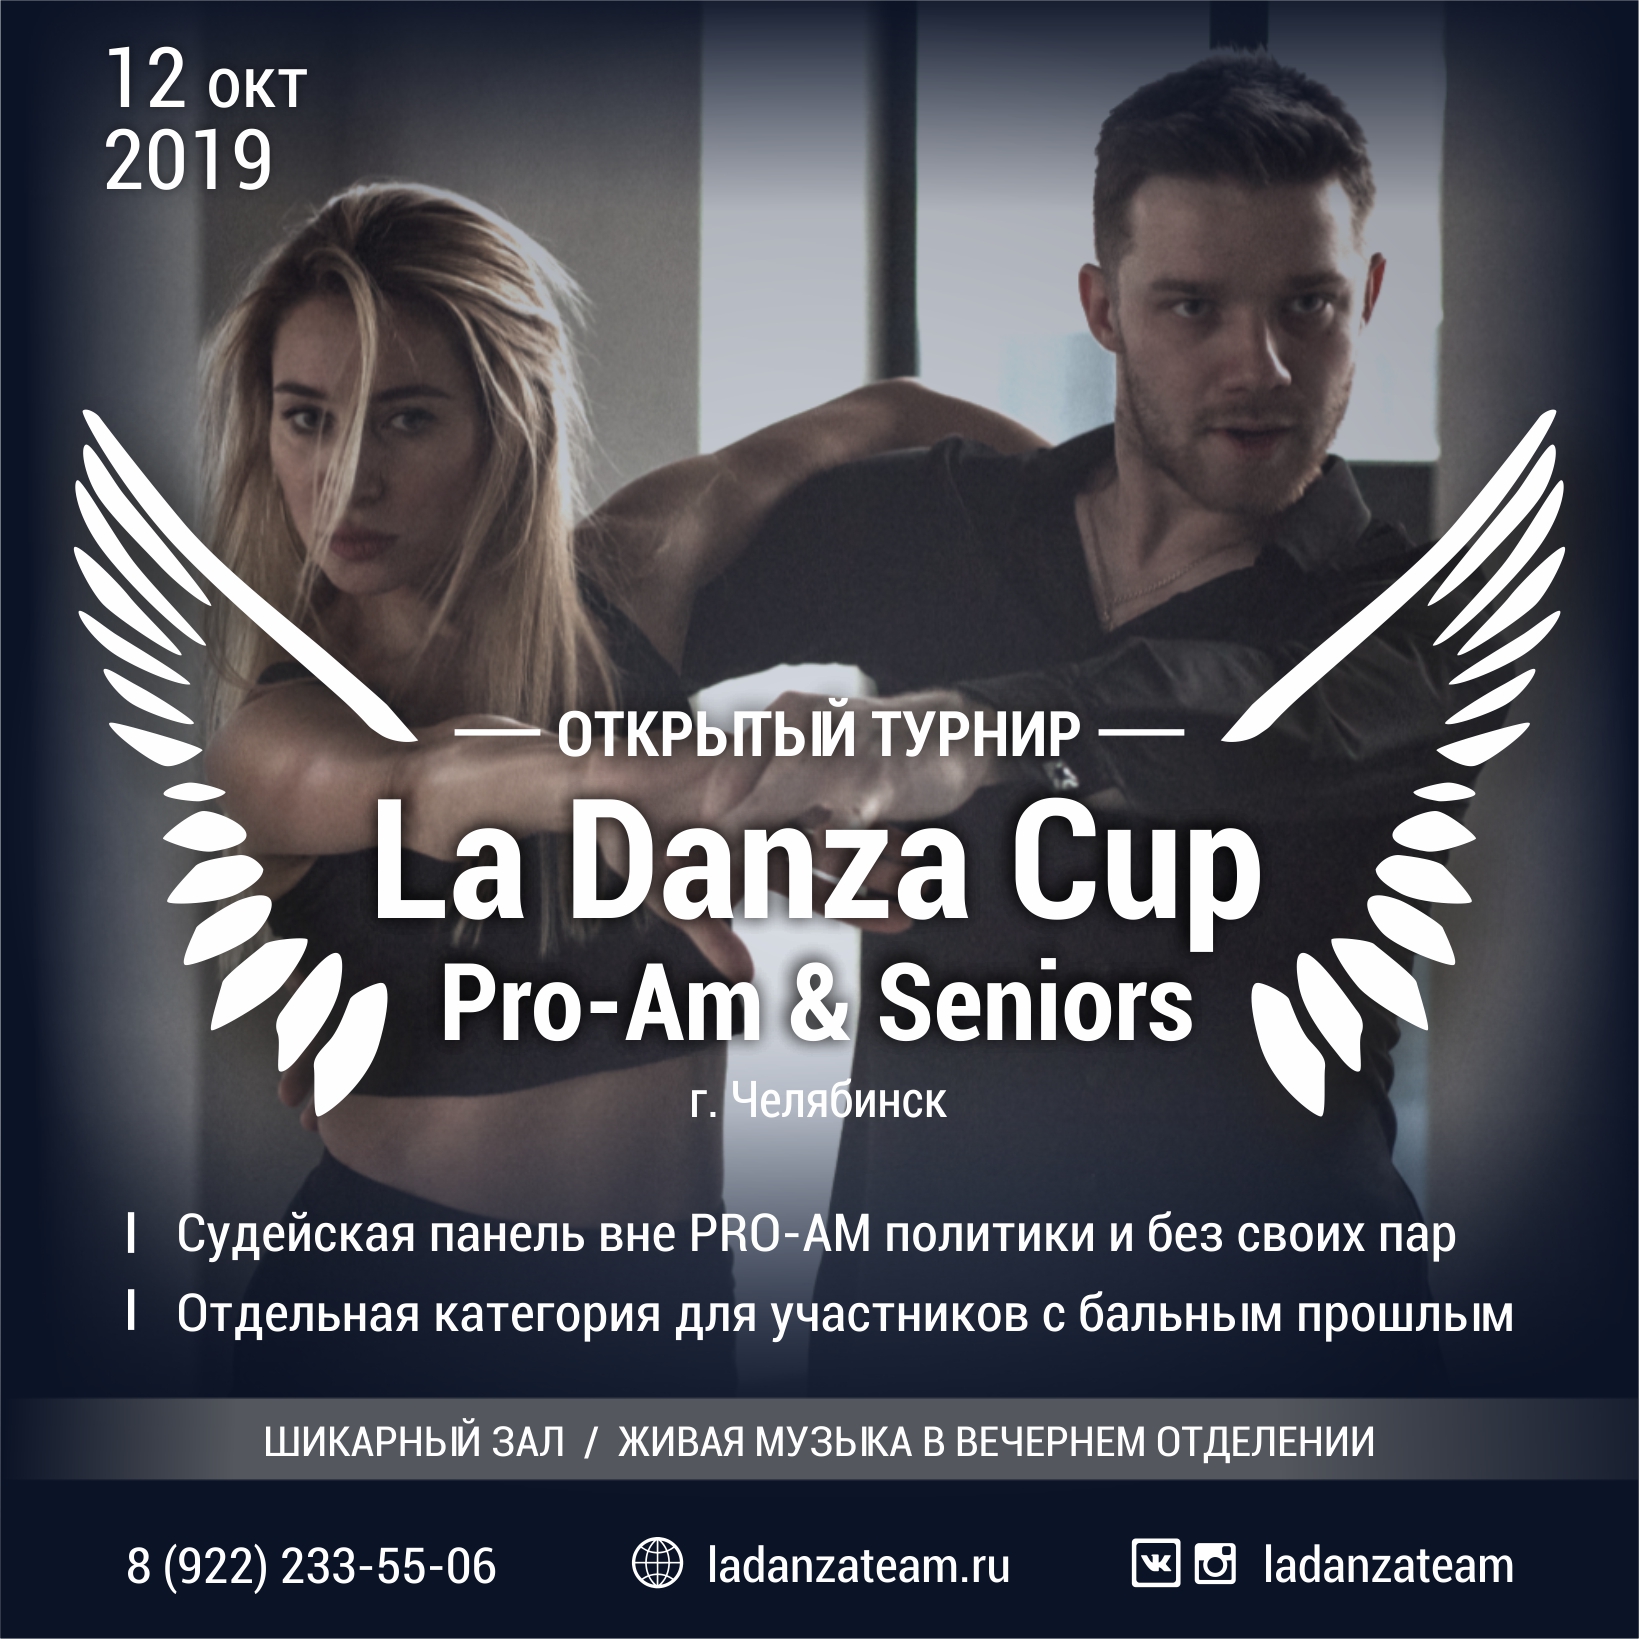 La Danza Cup